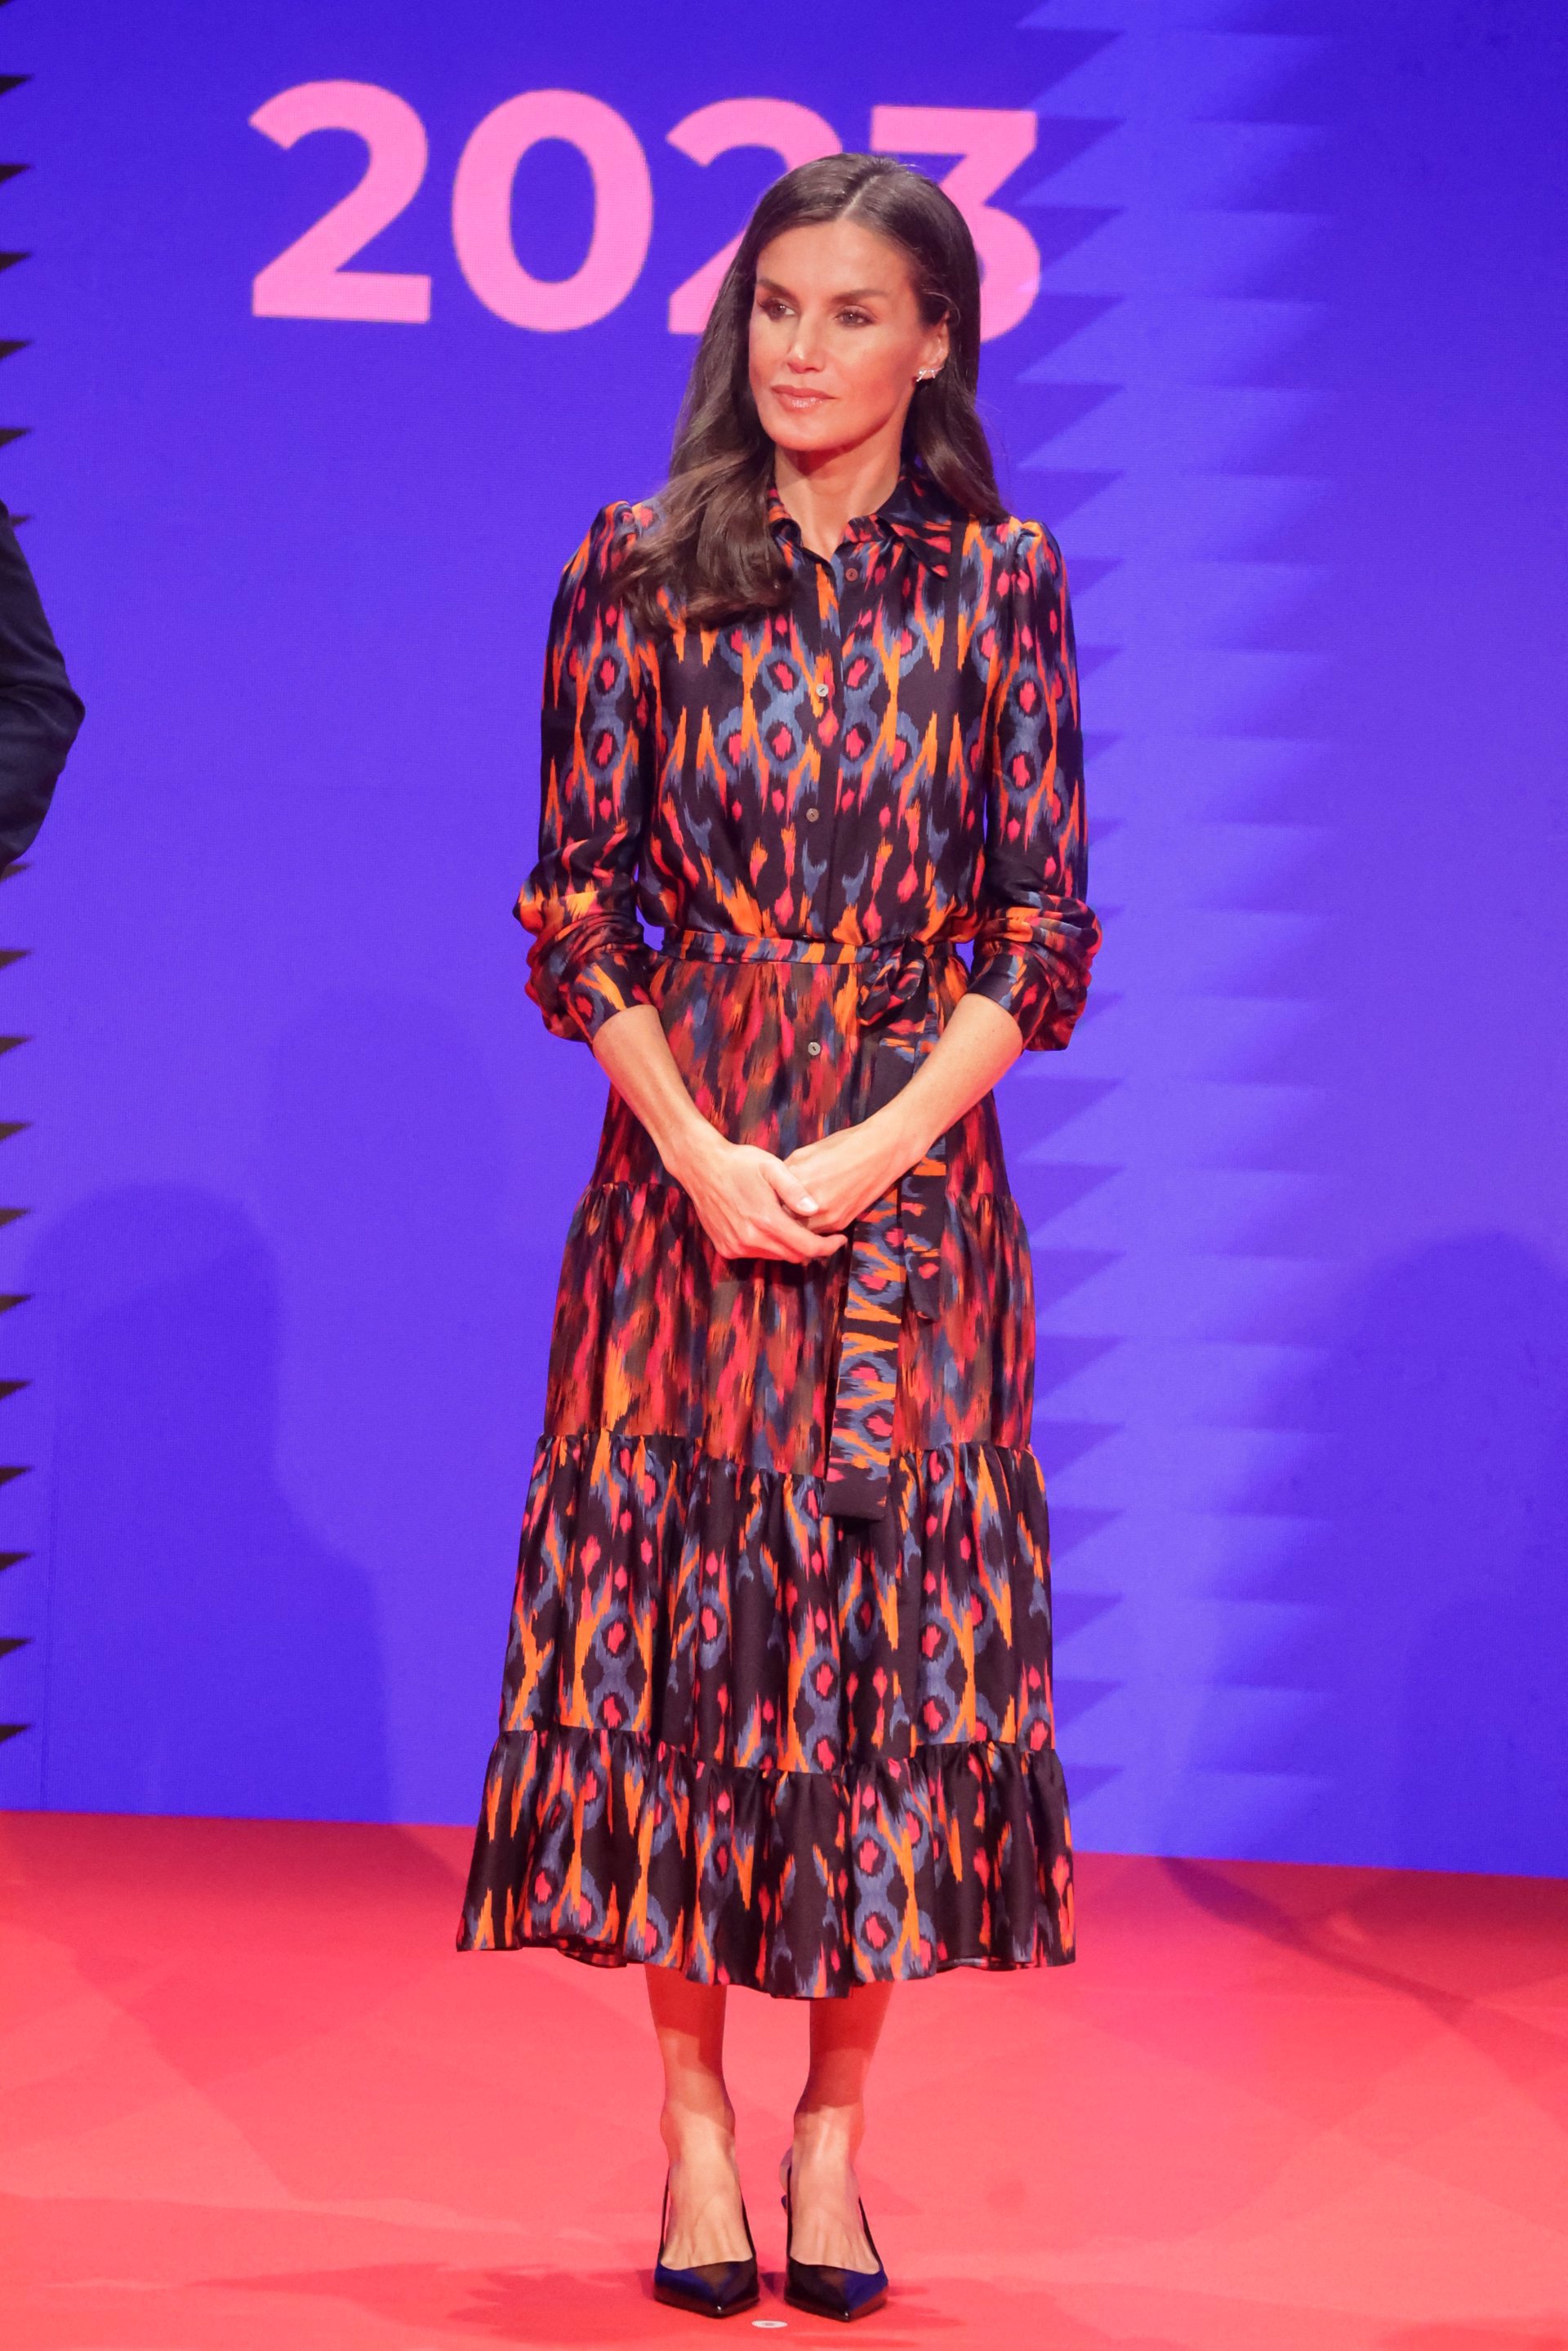 La Reina ha estrenado un original vestido de estampado multicolor